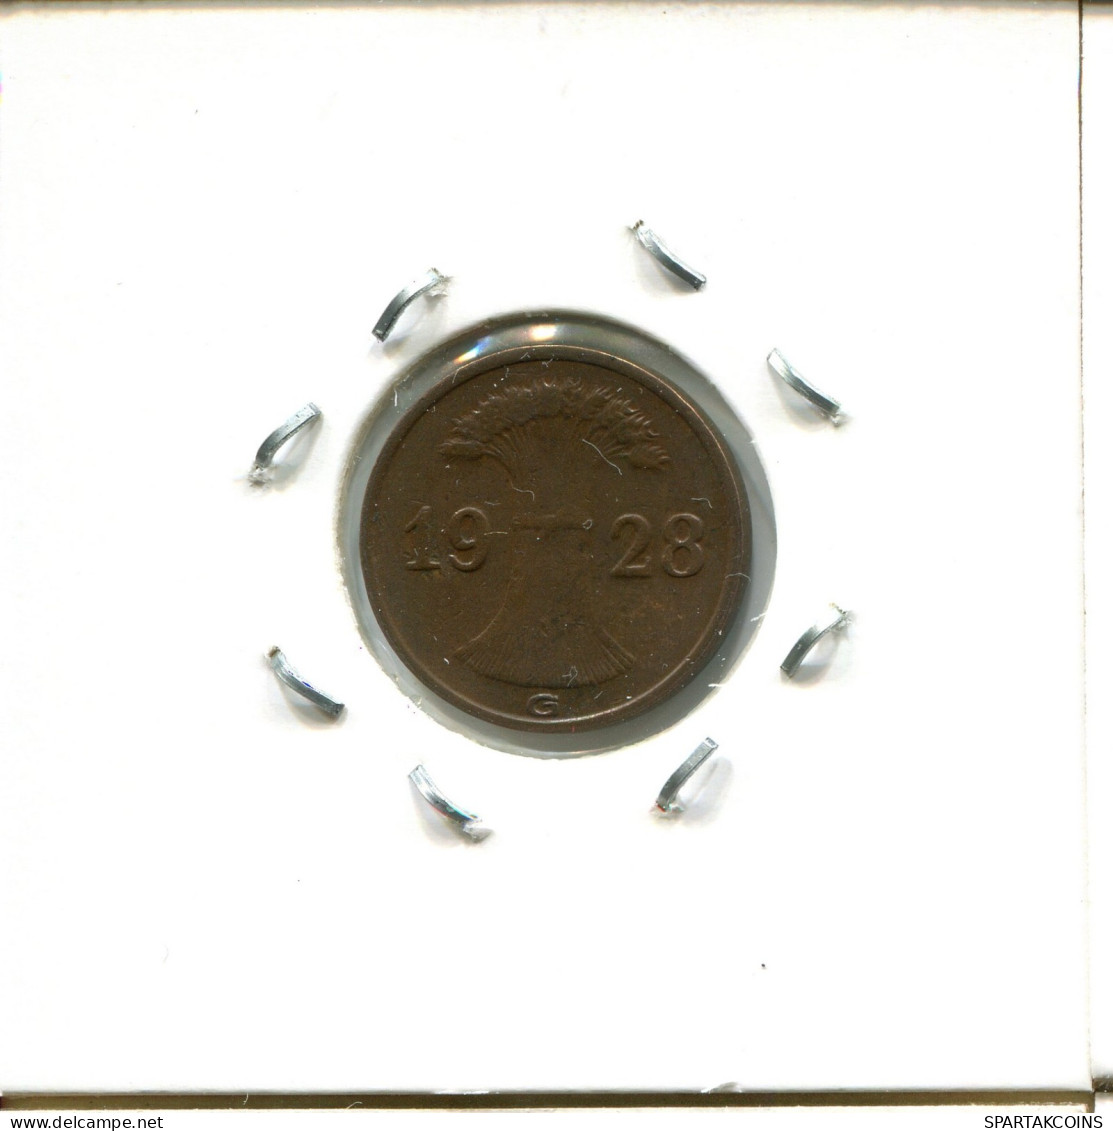 1 RENTENPFENNIG 1928 G ALEMANIA Moneda GERMANY #DA452.2.E.A - 1 Renten- & 1 Reichspfennig